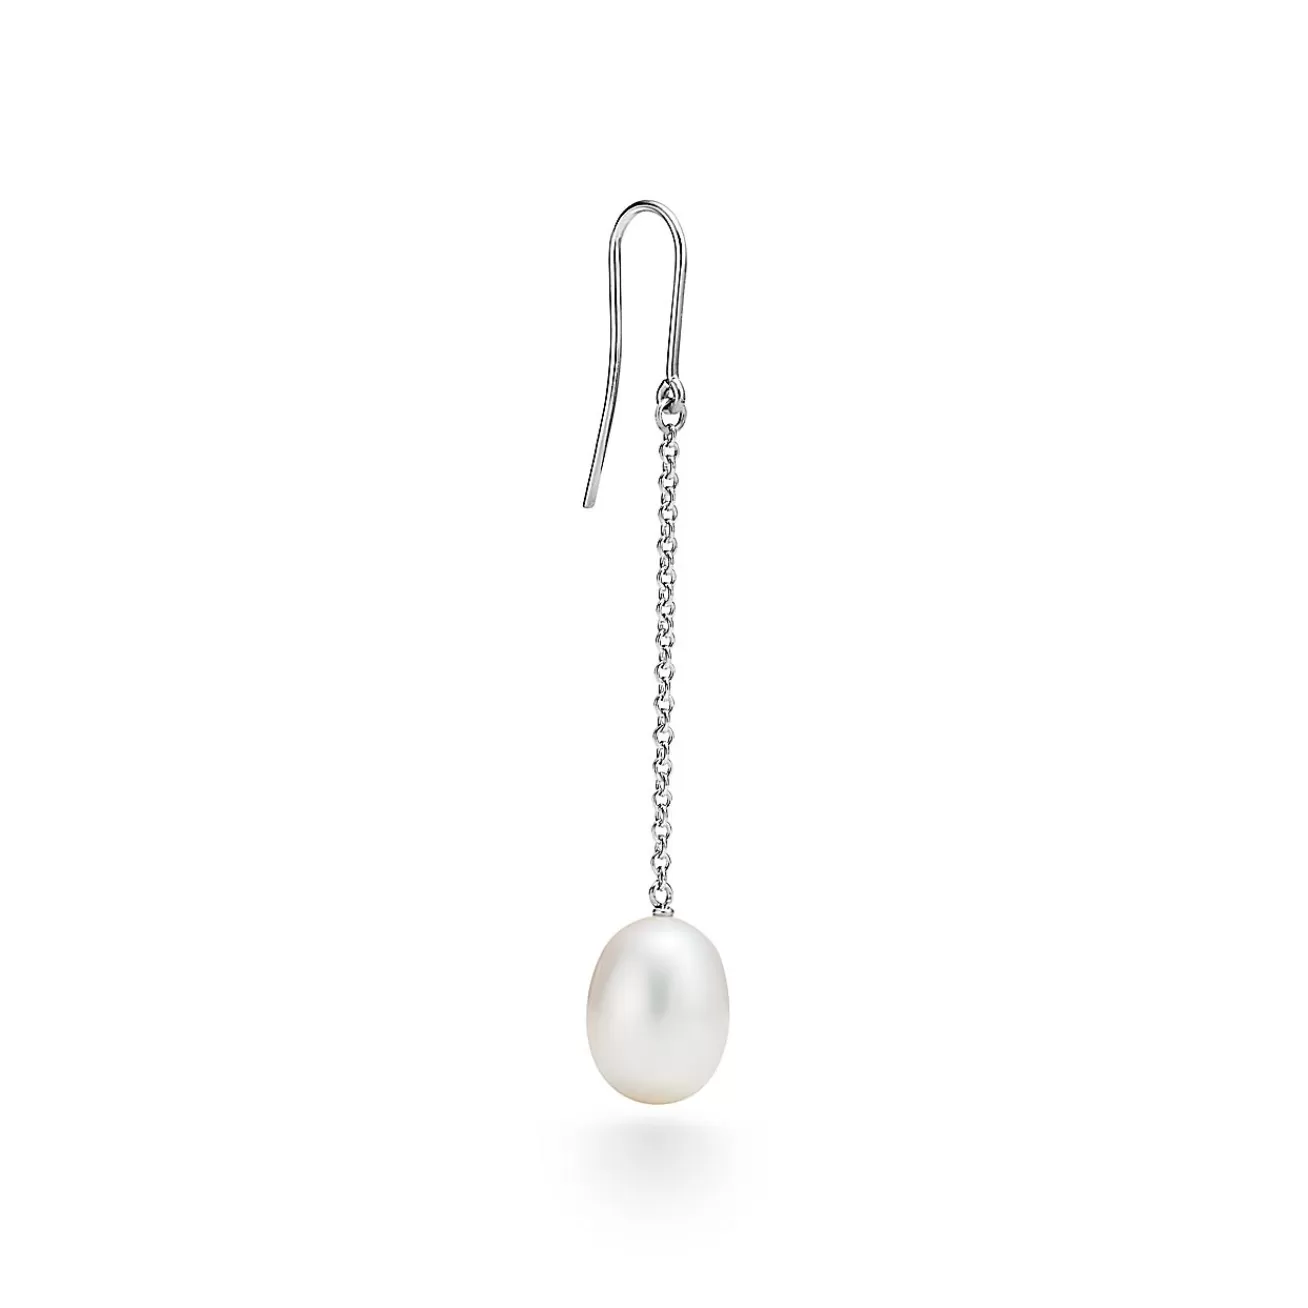 Tiffany & Co. Elsa Peretti® Pearls by the Yard™ chain earrings in sterling silver. | ^ Earrings | Sterling Silver Jewelry